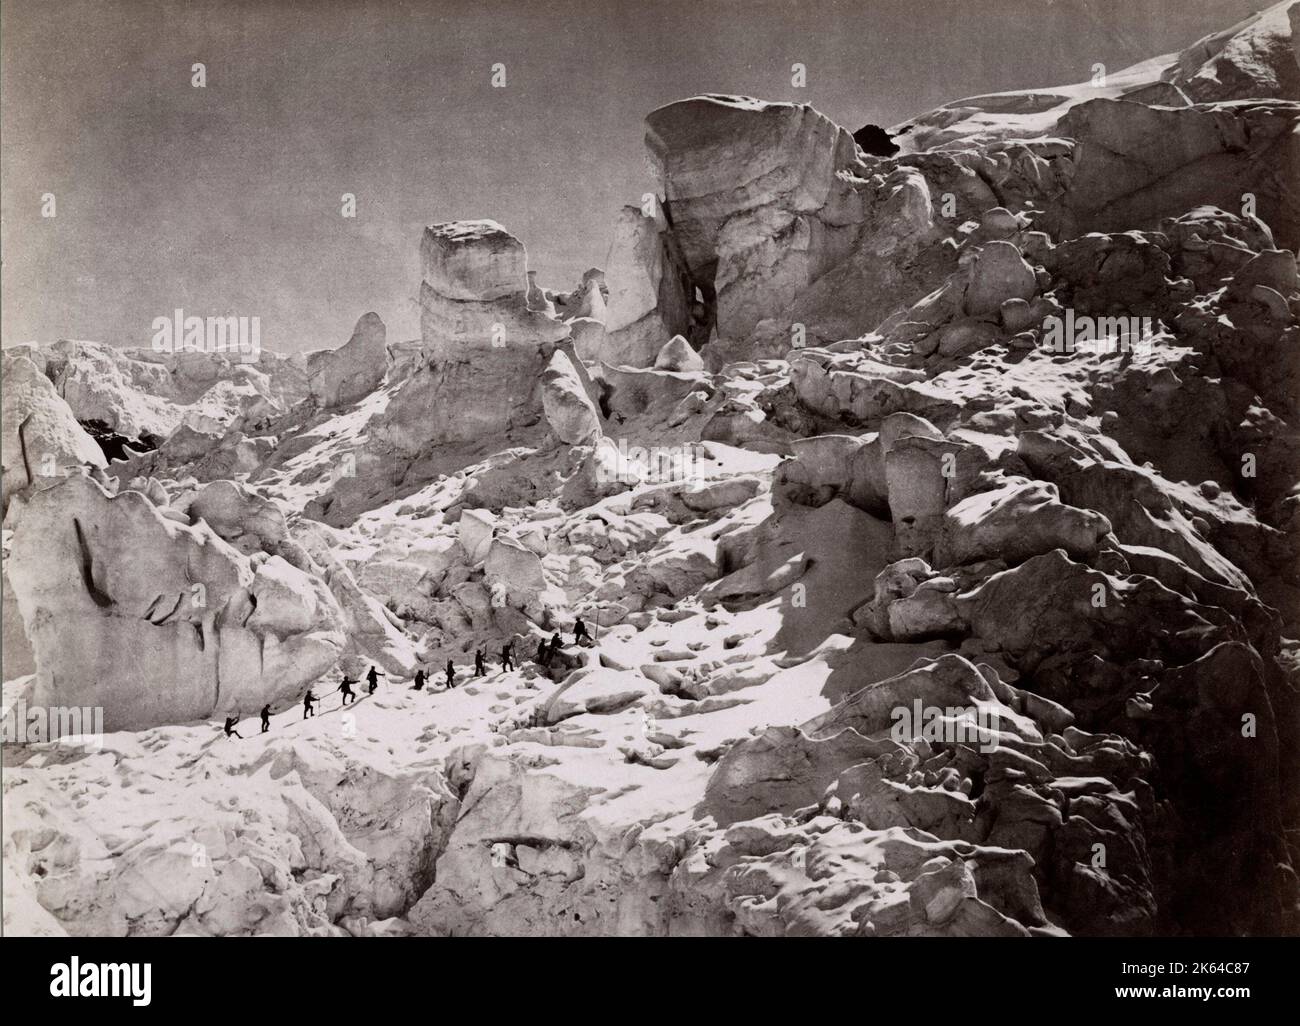 Ende 19th Jahrhundert Foto - Klettern die Alpen, Kletterer umzogen. Stockfoto